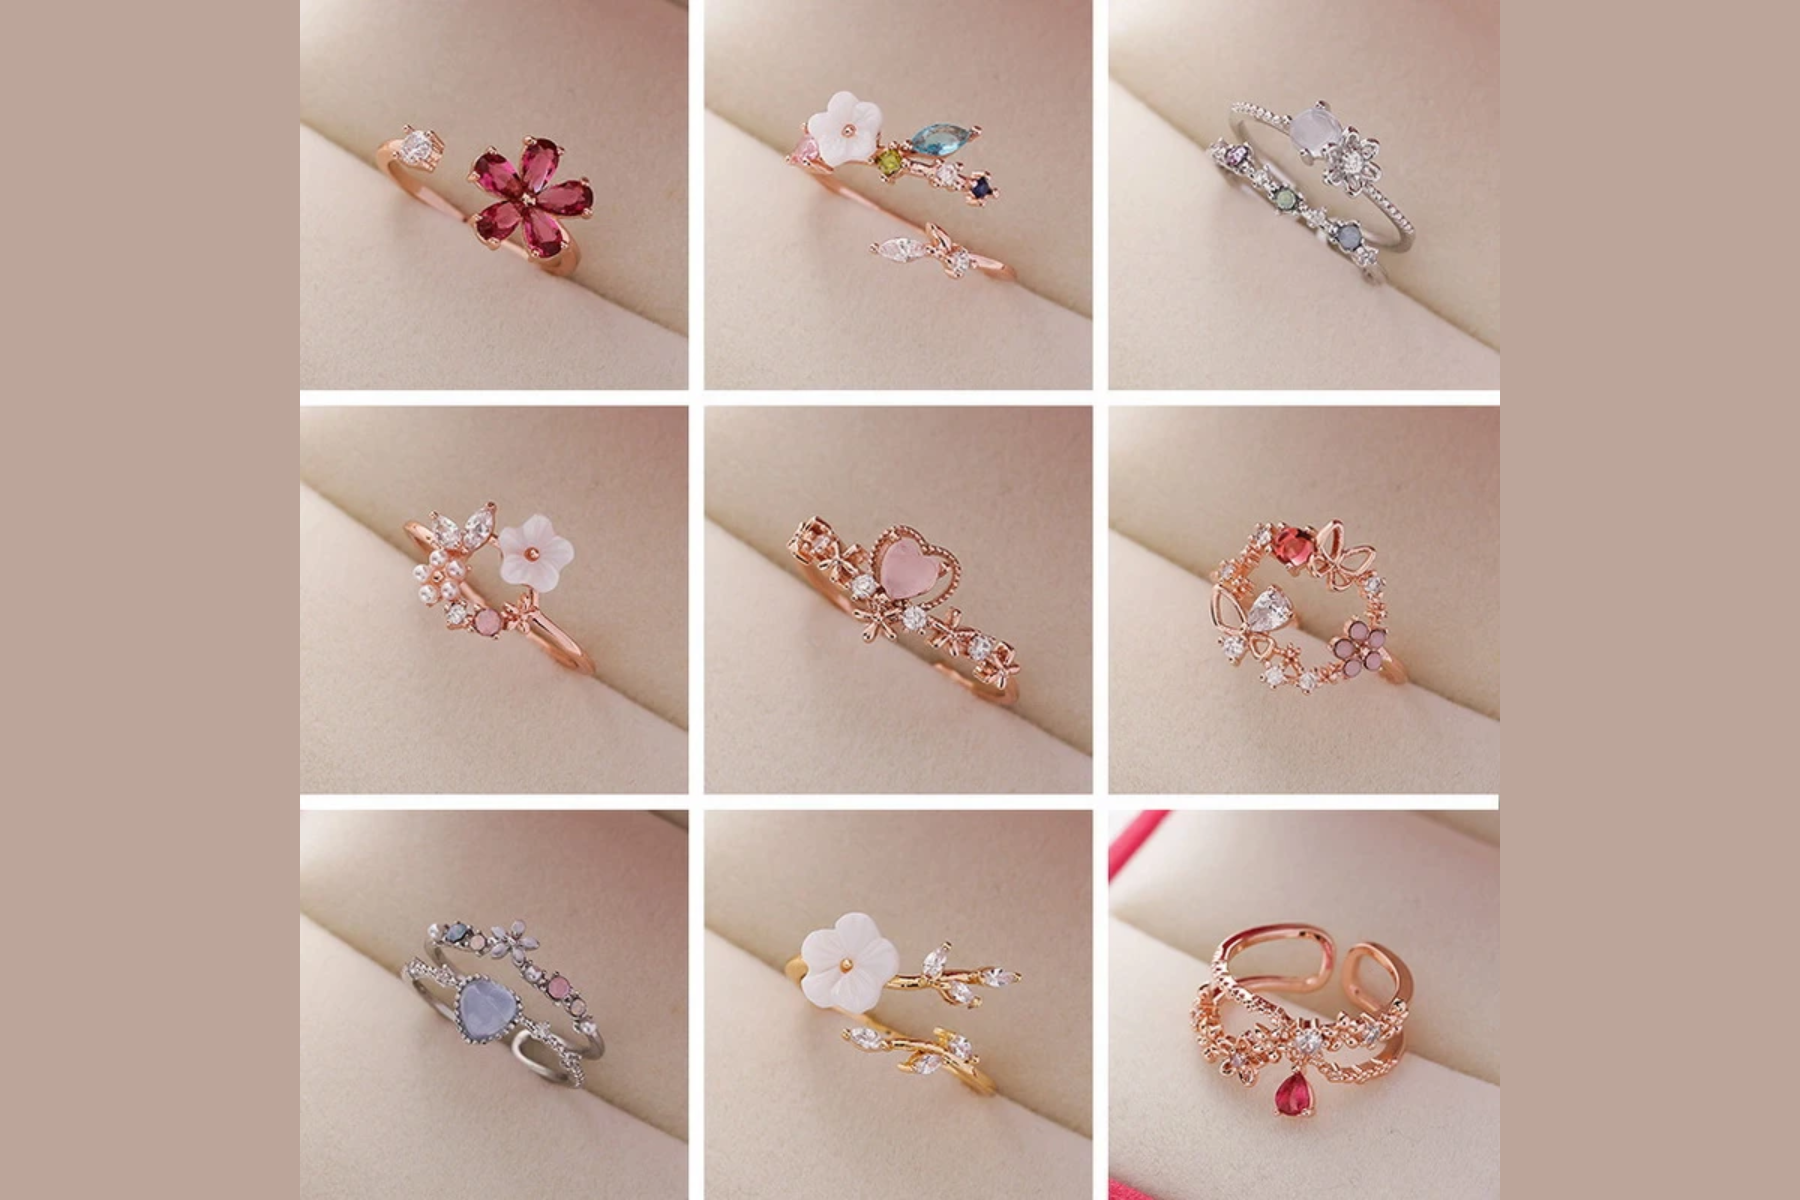 Nine distinct flower rings designs